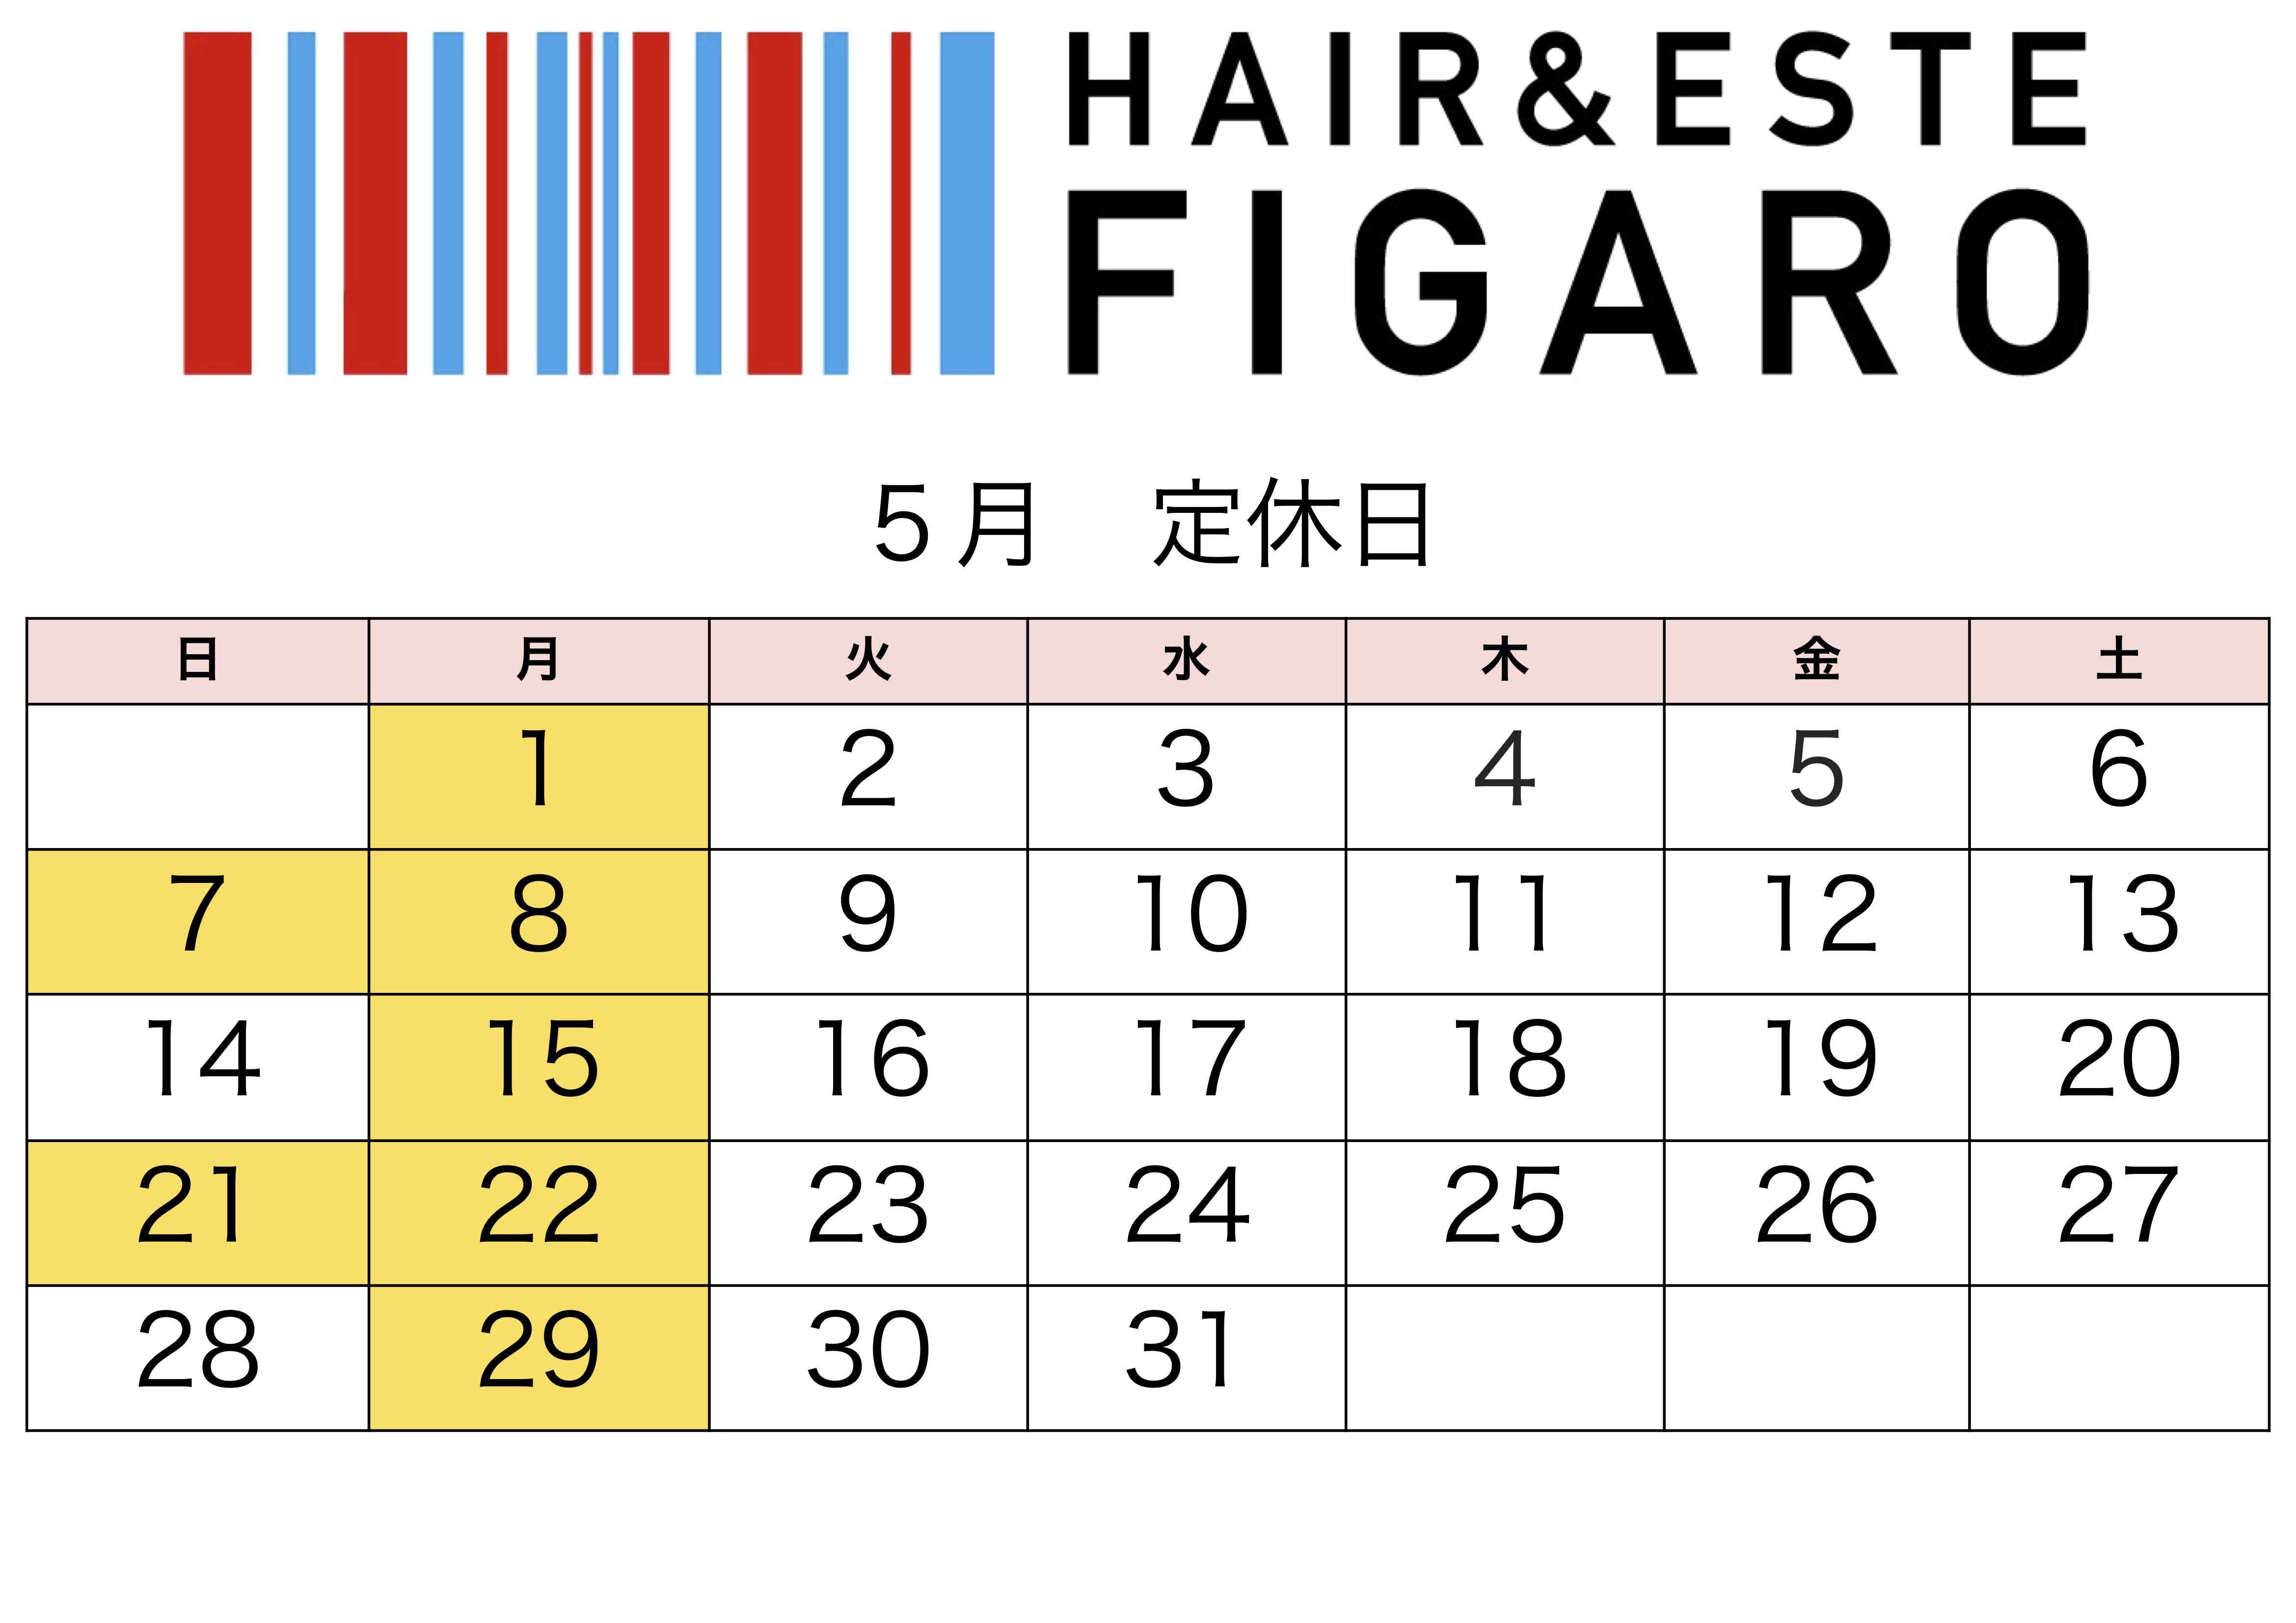 http://figaro-hair.com/blog/%E5%AE%9A%E4%BC%91%E6%97%A5%EF%BC%92%EF%BC%90%EF%BC%92%EF%BC%93%EF%BC%95%E3%80%82.jpg